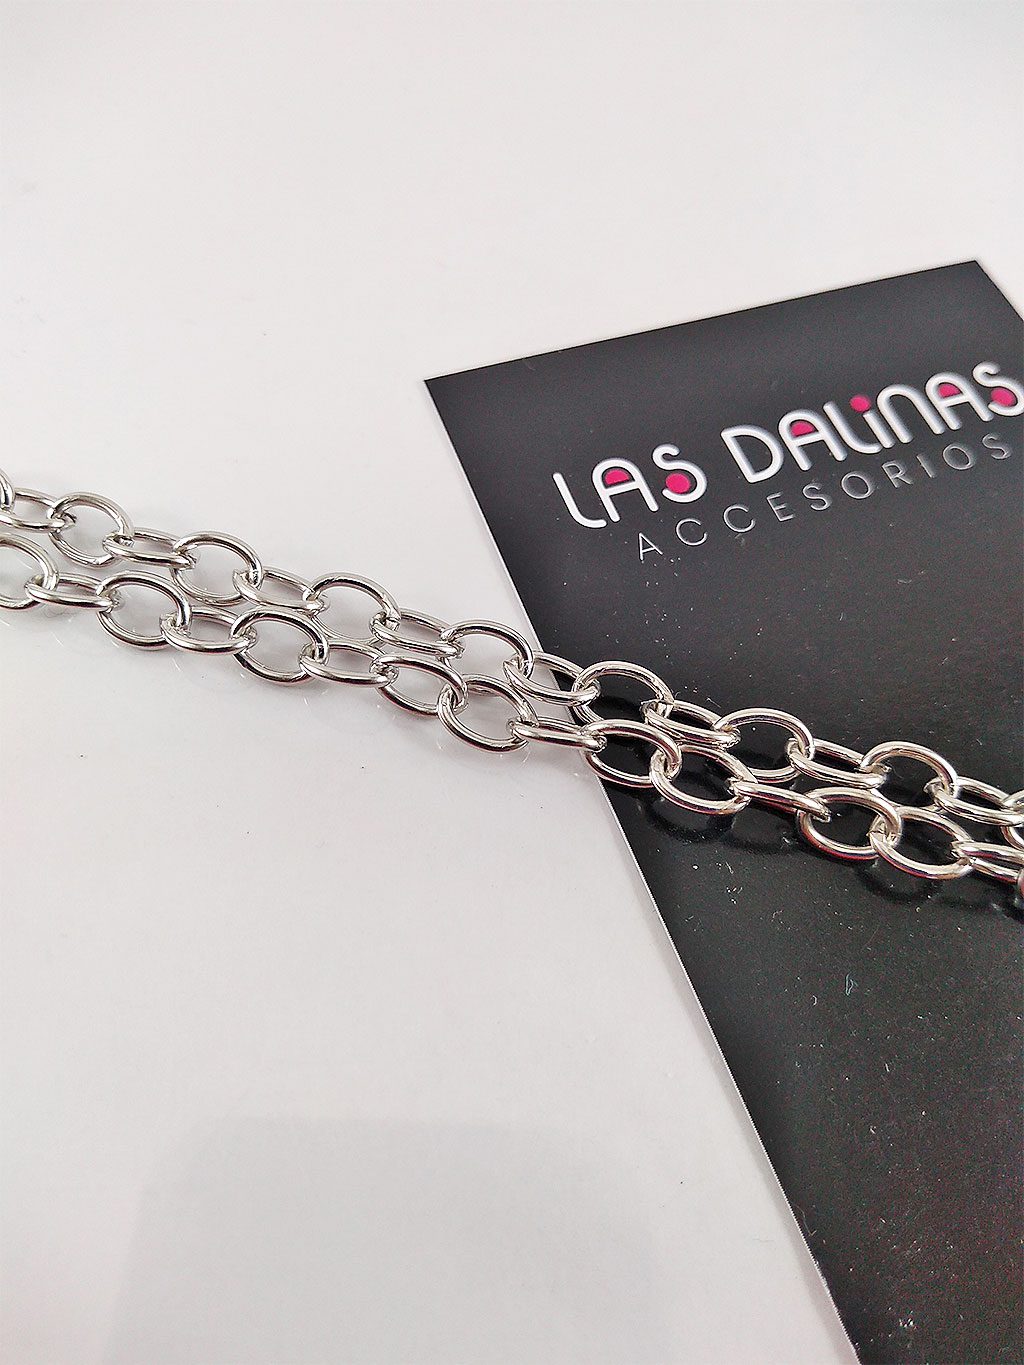 NBEADS 10 cadenas de collar de hierro cadenas de hierro de 5 colores con cierres de garra de langosta para hacer joyas 61 cm de largo 